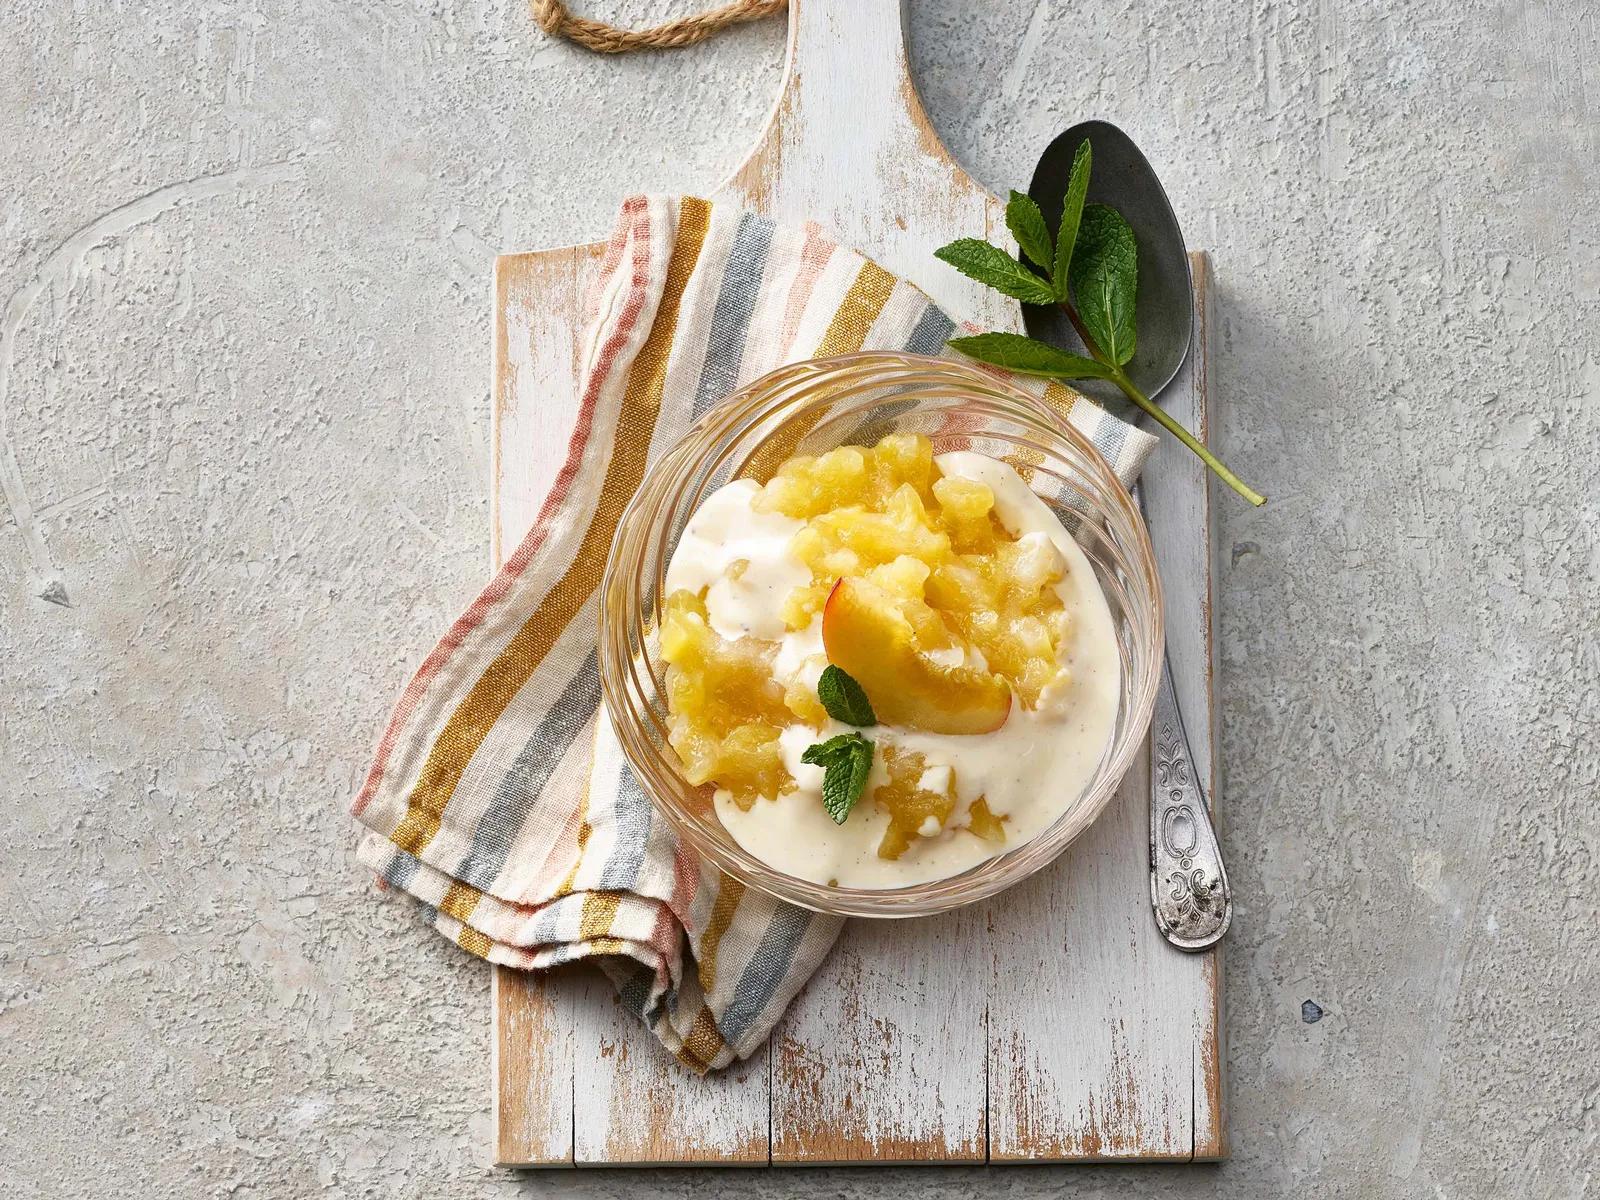 Pfirsich-Grütze mit Honig-Crème-fraîche | Kochen